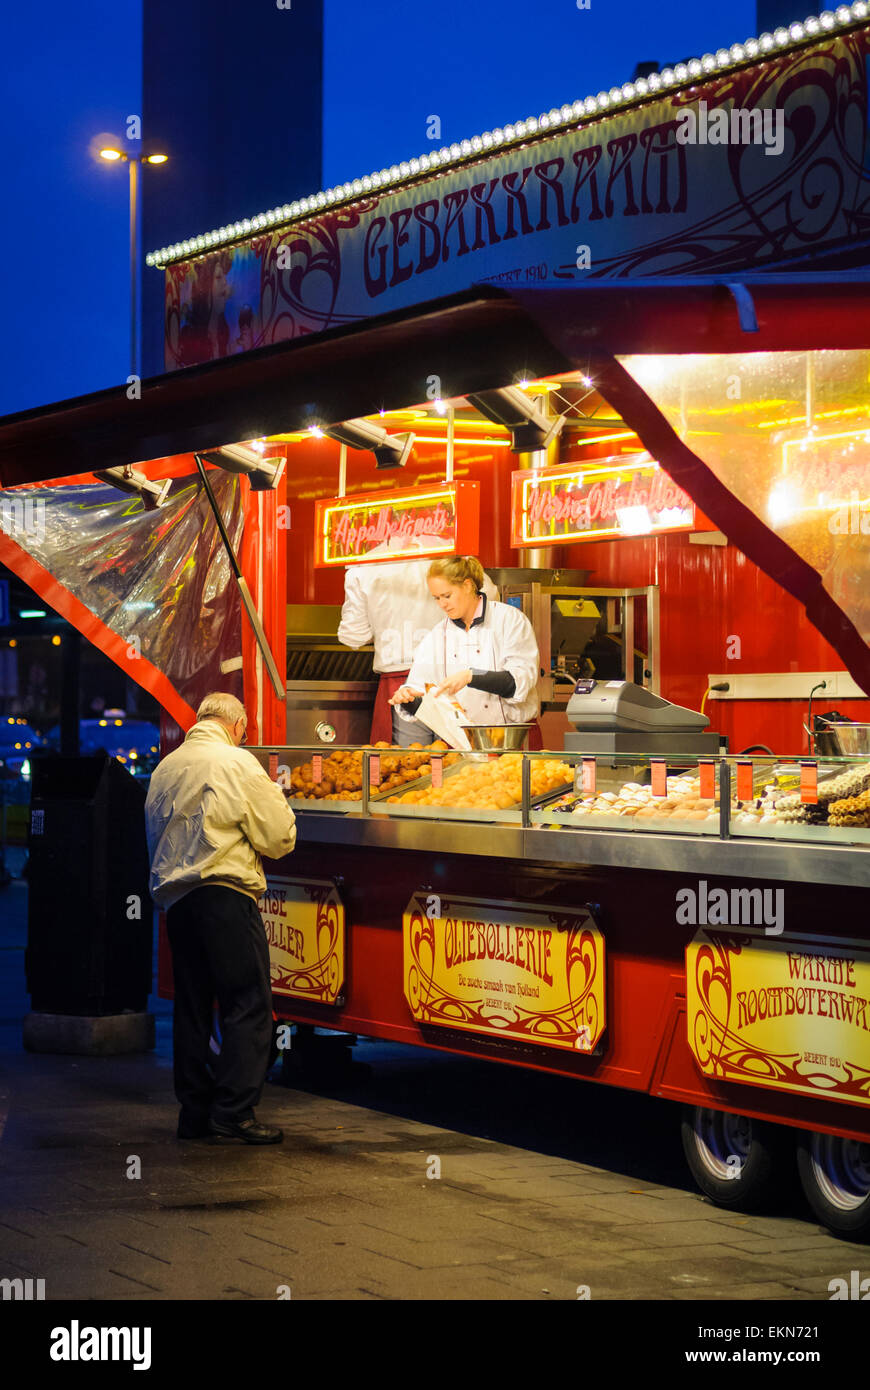 Snack-stand à l'aéroport de Schiphol, aux Pays-Bas, la vente des aliments traditionnels néerlandais incluant des gaufres et pâtisseries, dans la soirée. Stand de nourriture. Banque D'Images